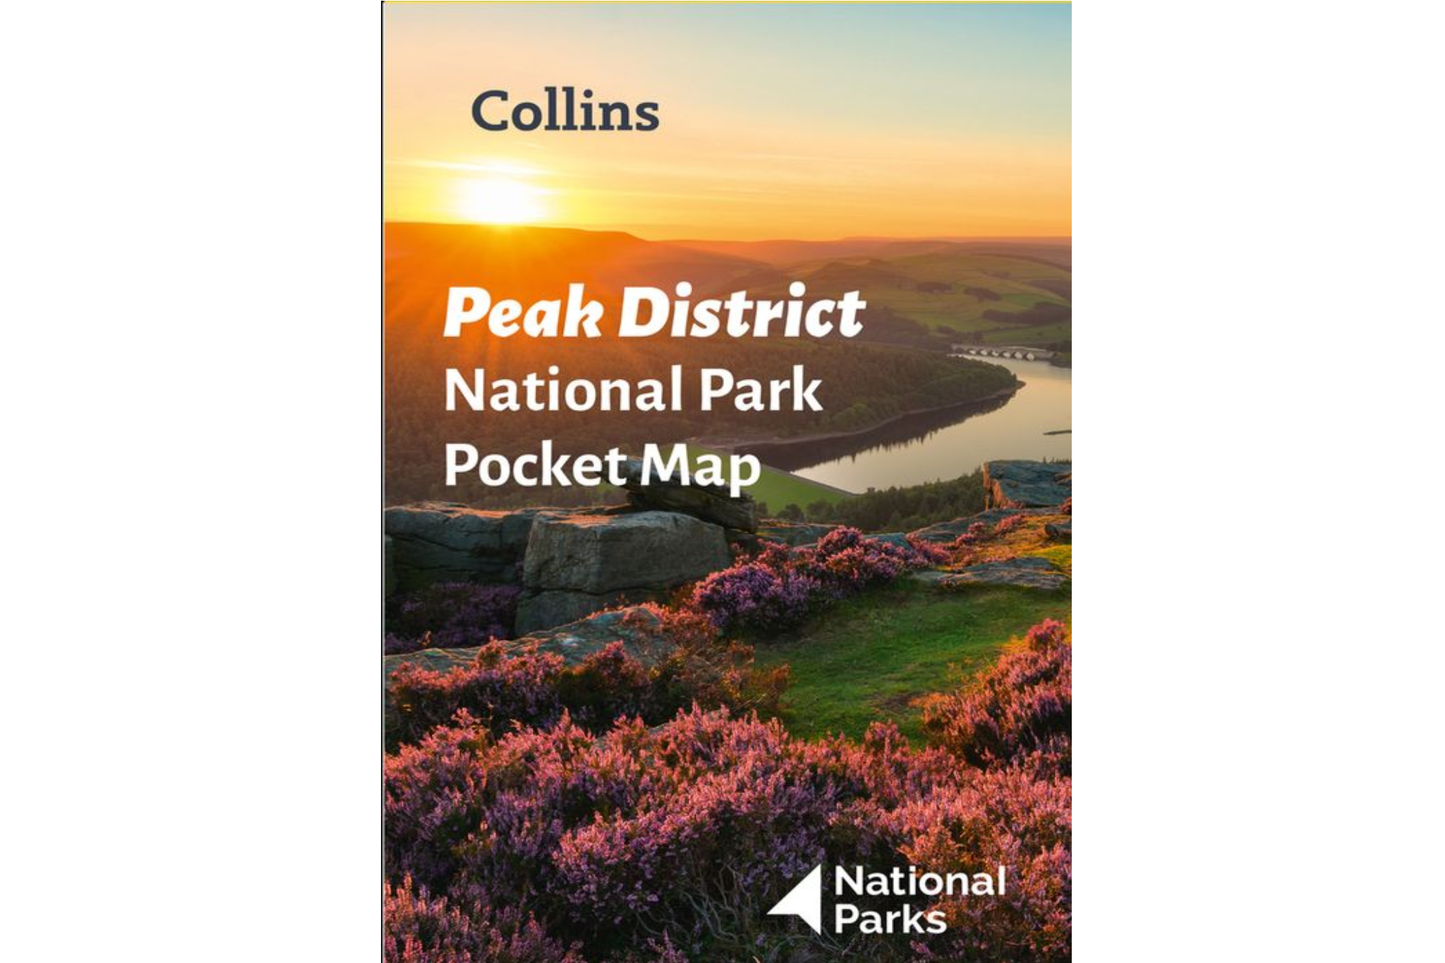 Peak District - National Park Pocket Map